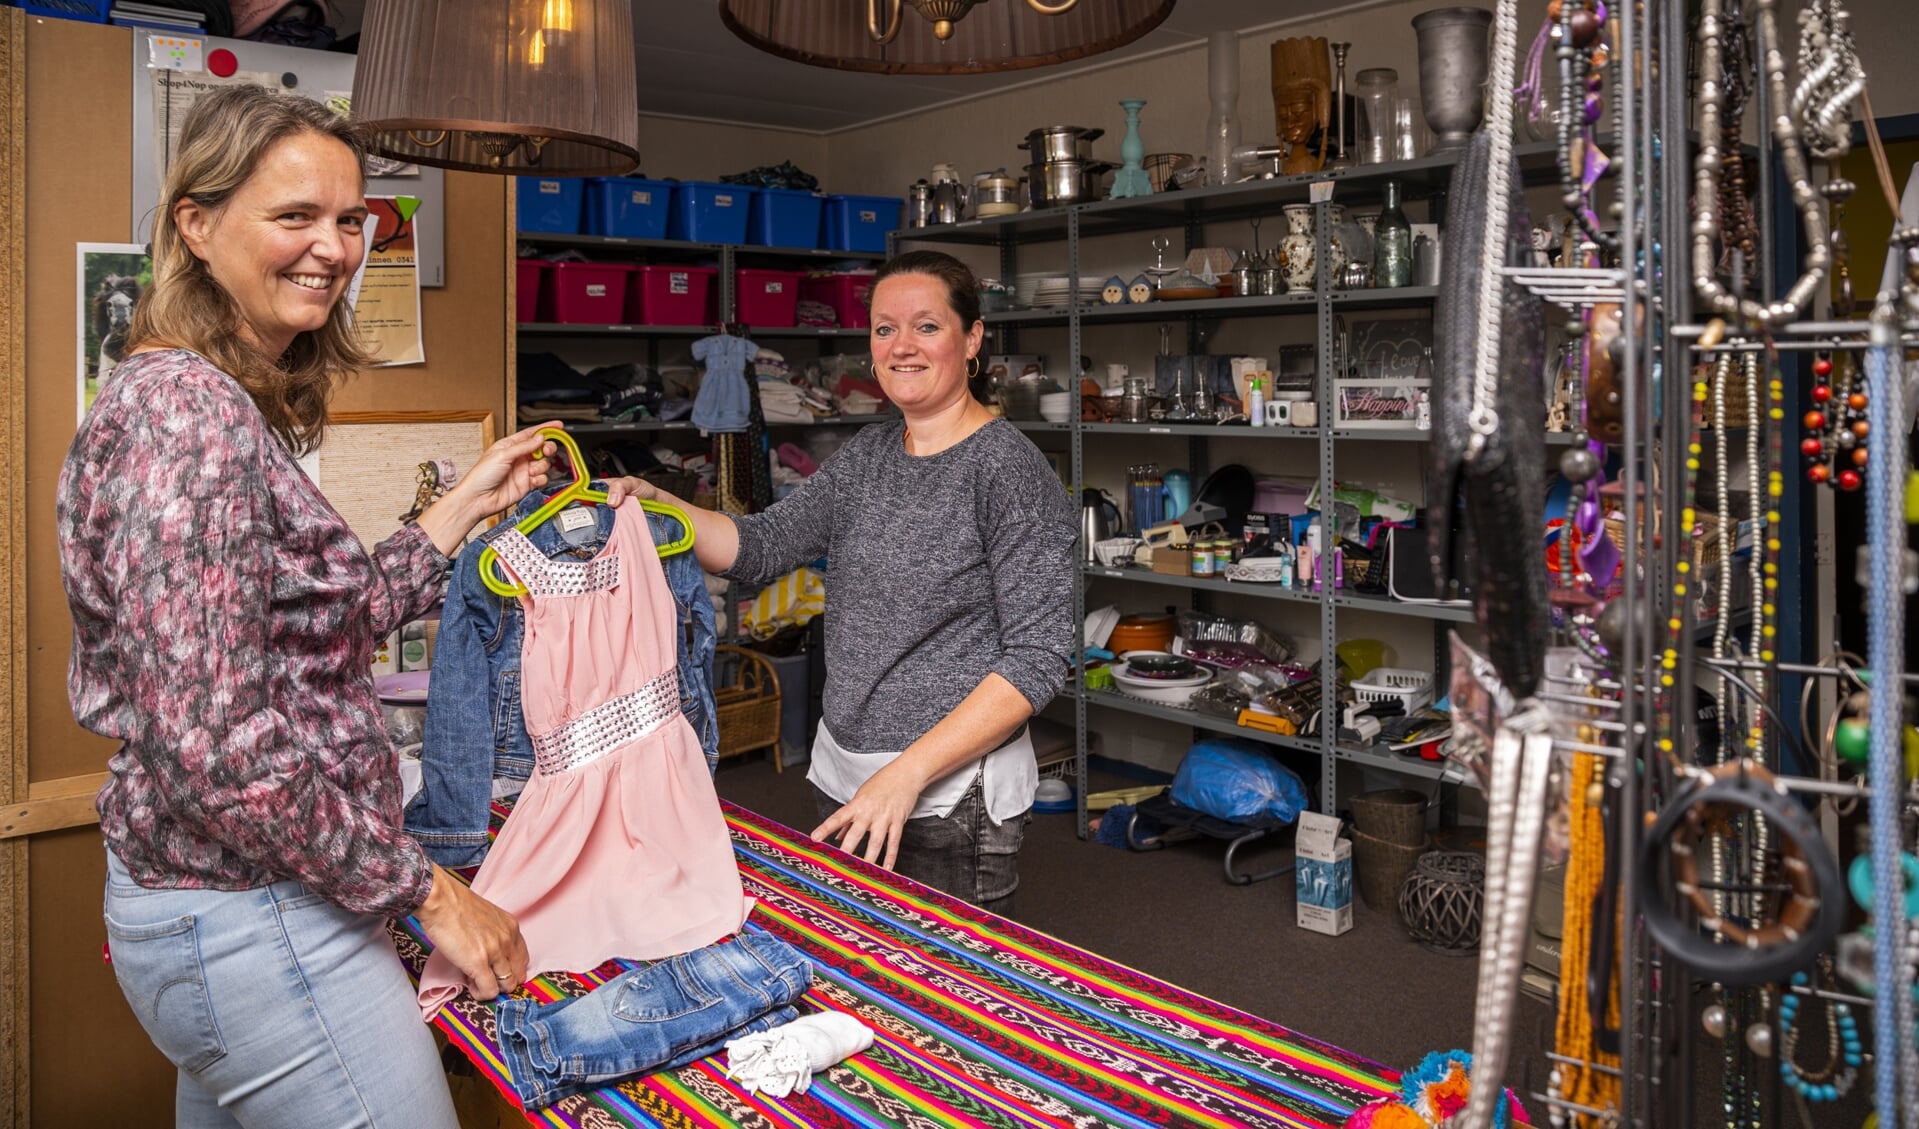 Archieffoto van de opening van ruilwinkel Shop4nop aan de Hooiweg, juni vorig jaar.